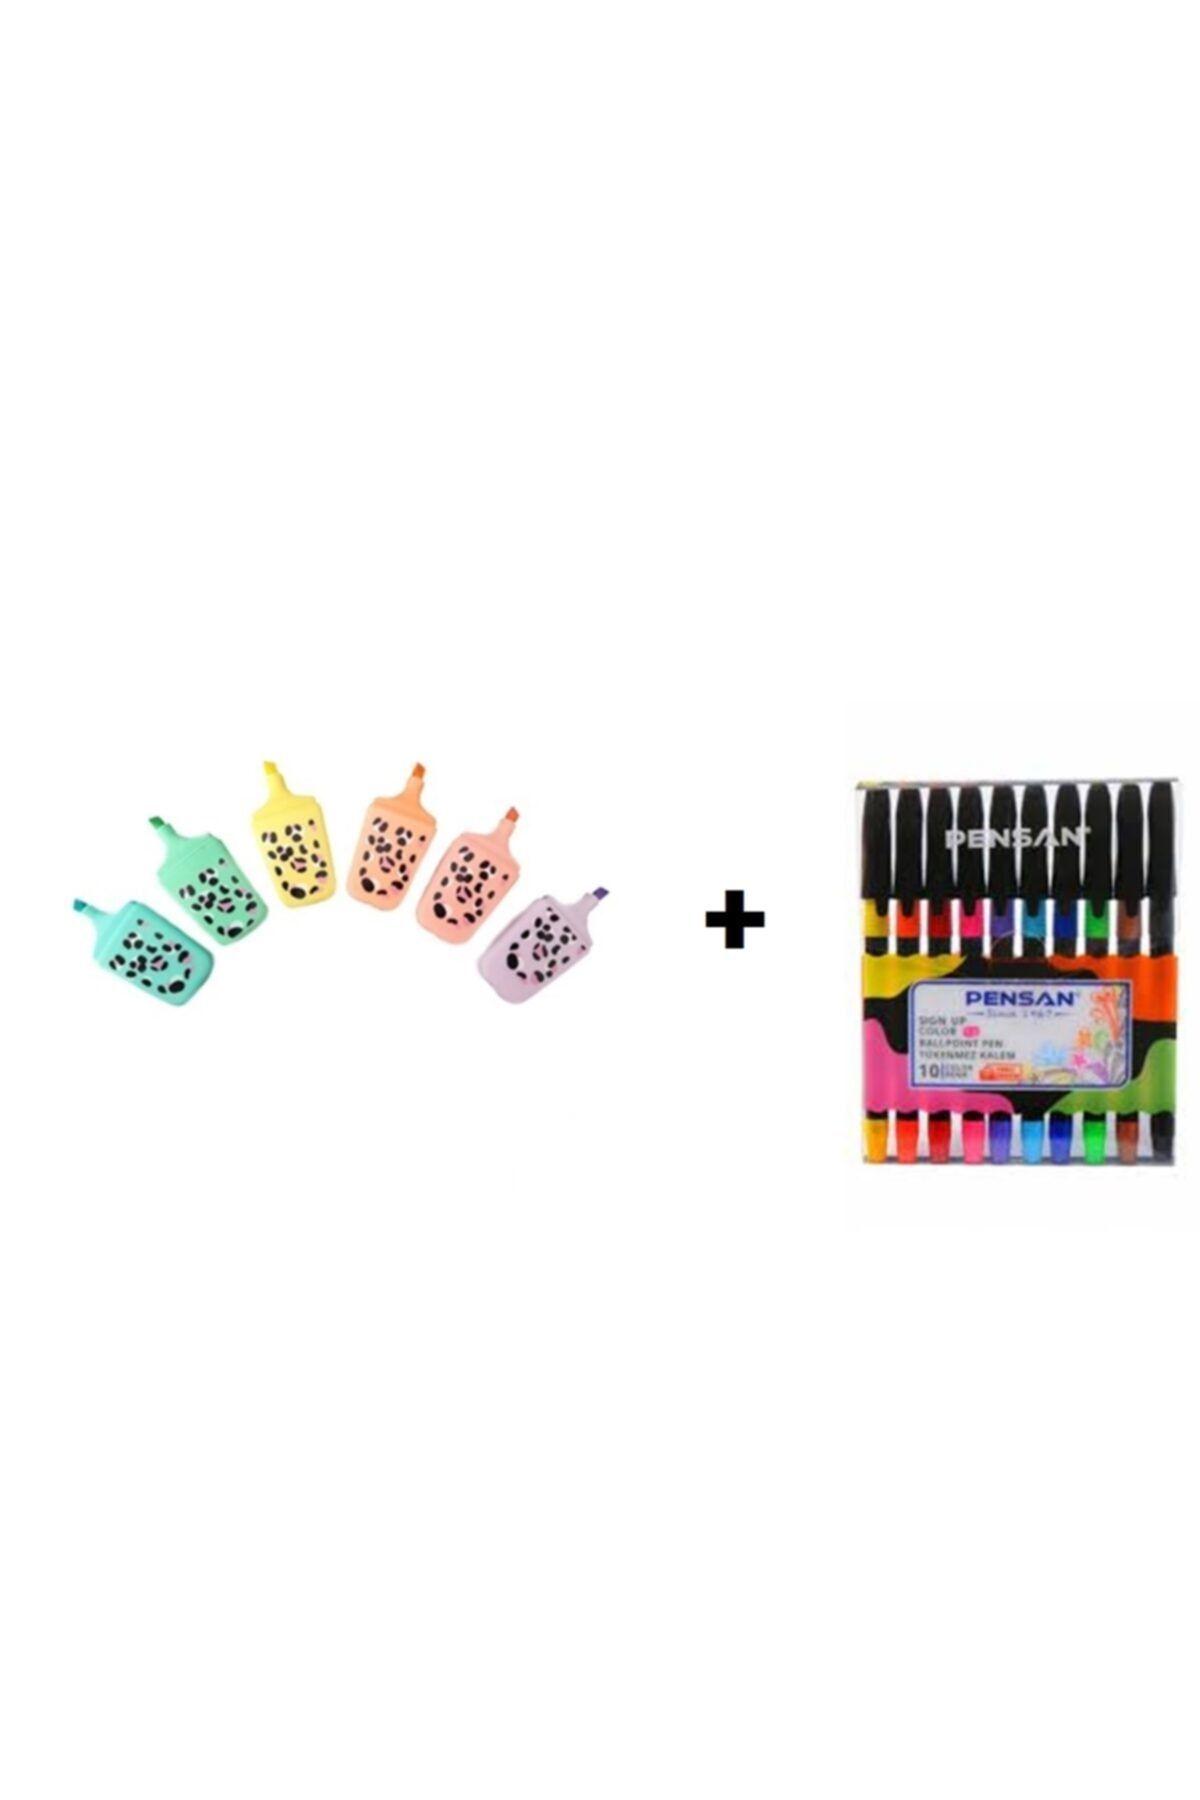 Pensan Sign Up Renkli Tükenmez Kalem 10'lu + Dalmaçyalı Pastel Renk Mini Fosforlu Kalem 6'lı